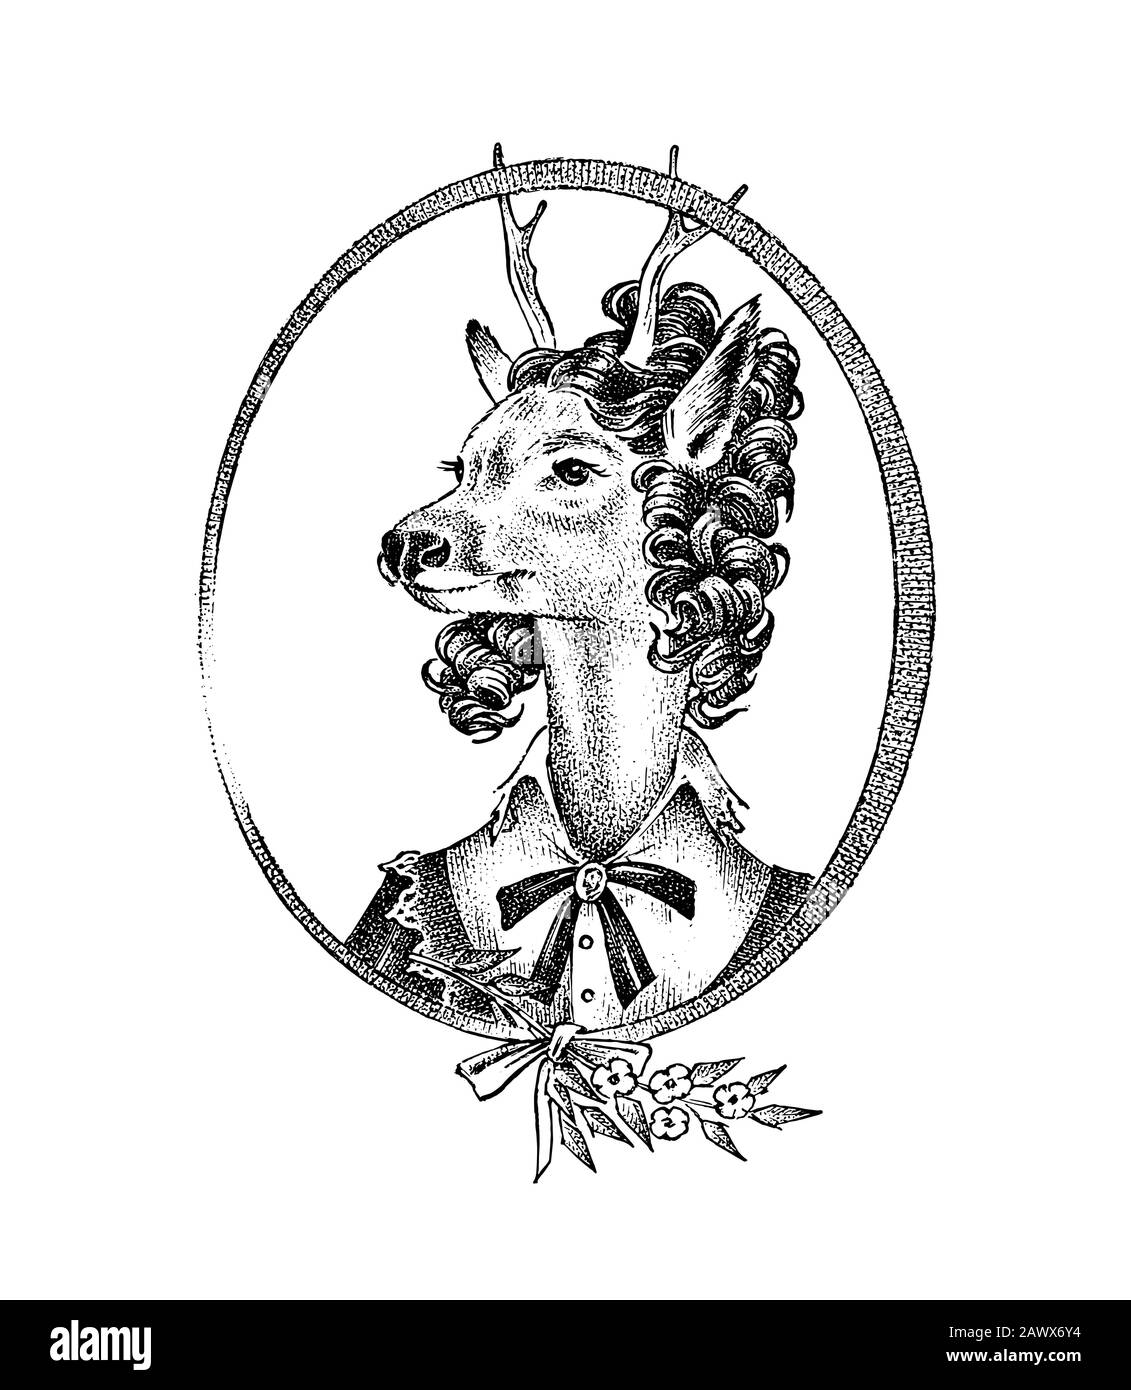 Carattere animale. Donna di cervo o o con fiori. Ritratto disegnato a mano. Schizzo monocromatico inciso vecchio per scheda, etichetta o tatuaggio. Antropomorfismo in Illustrazione Vettoriale